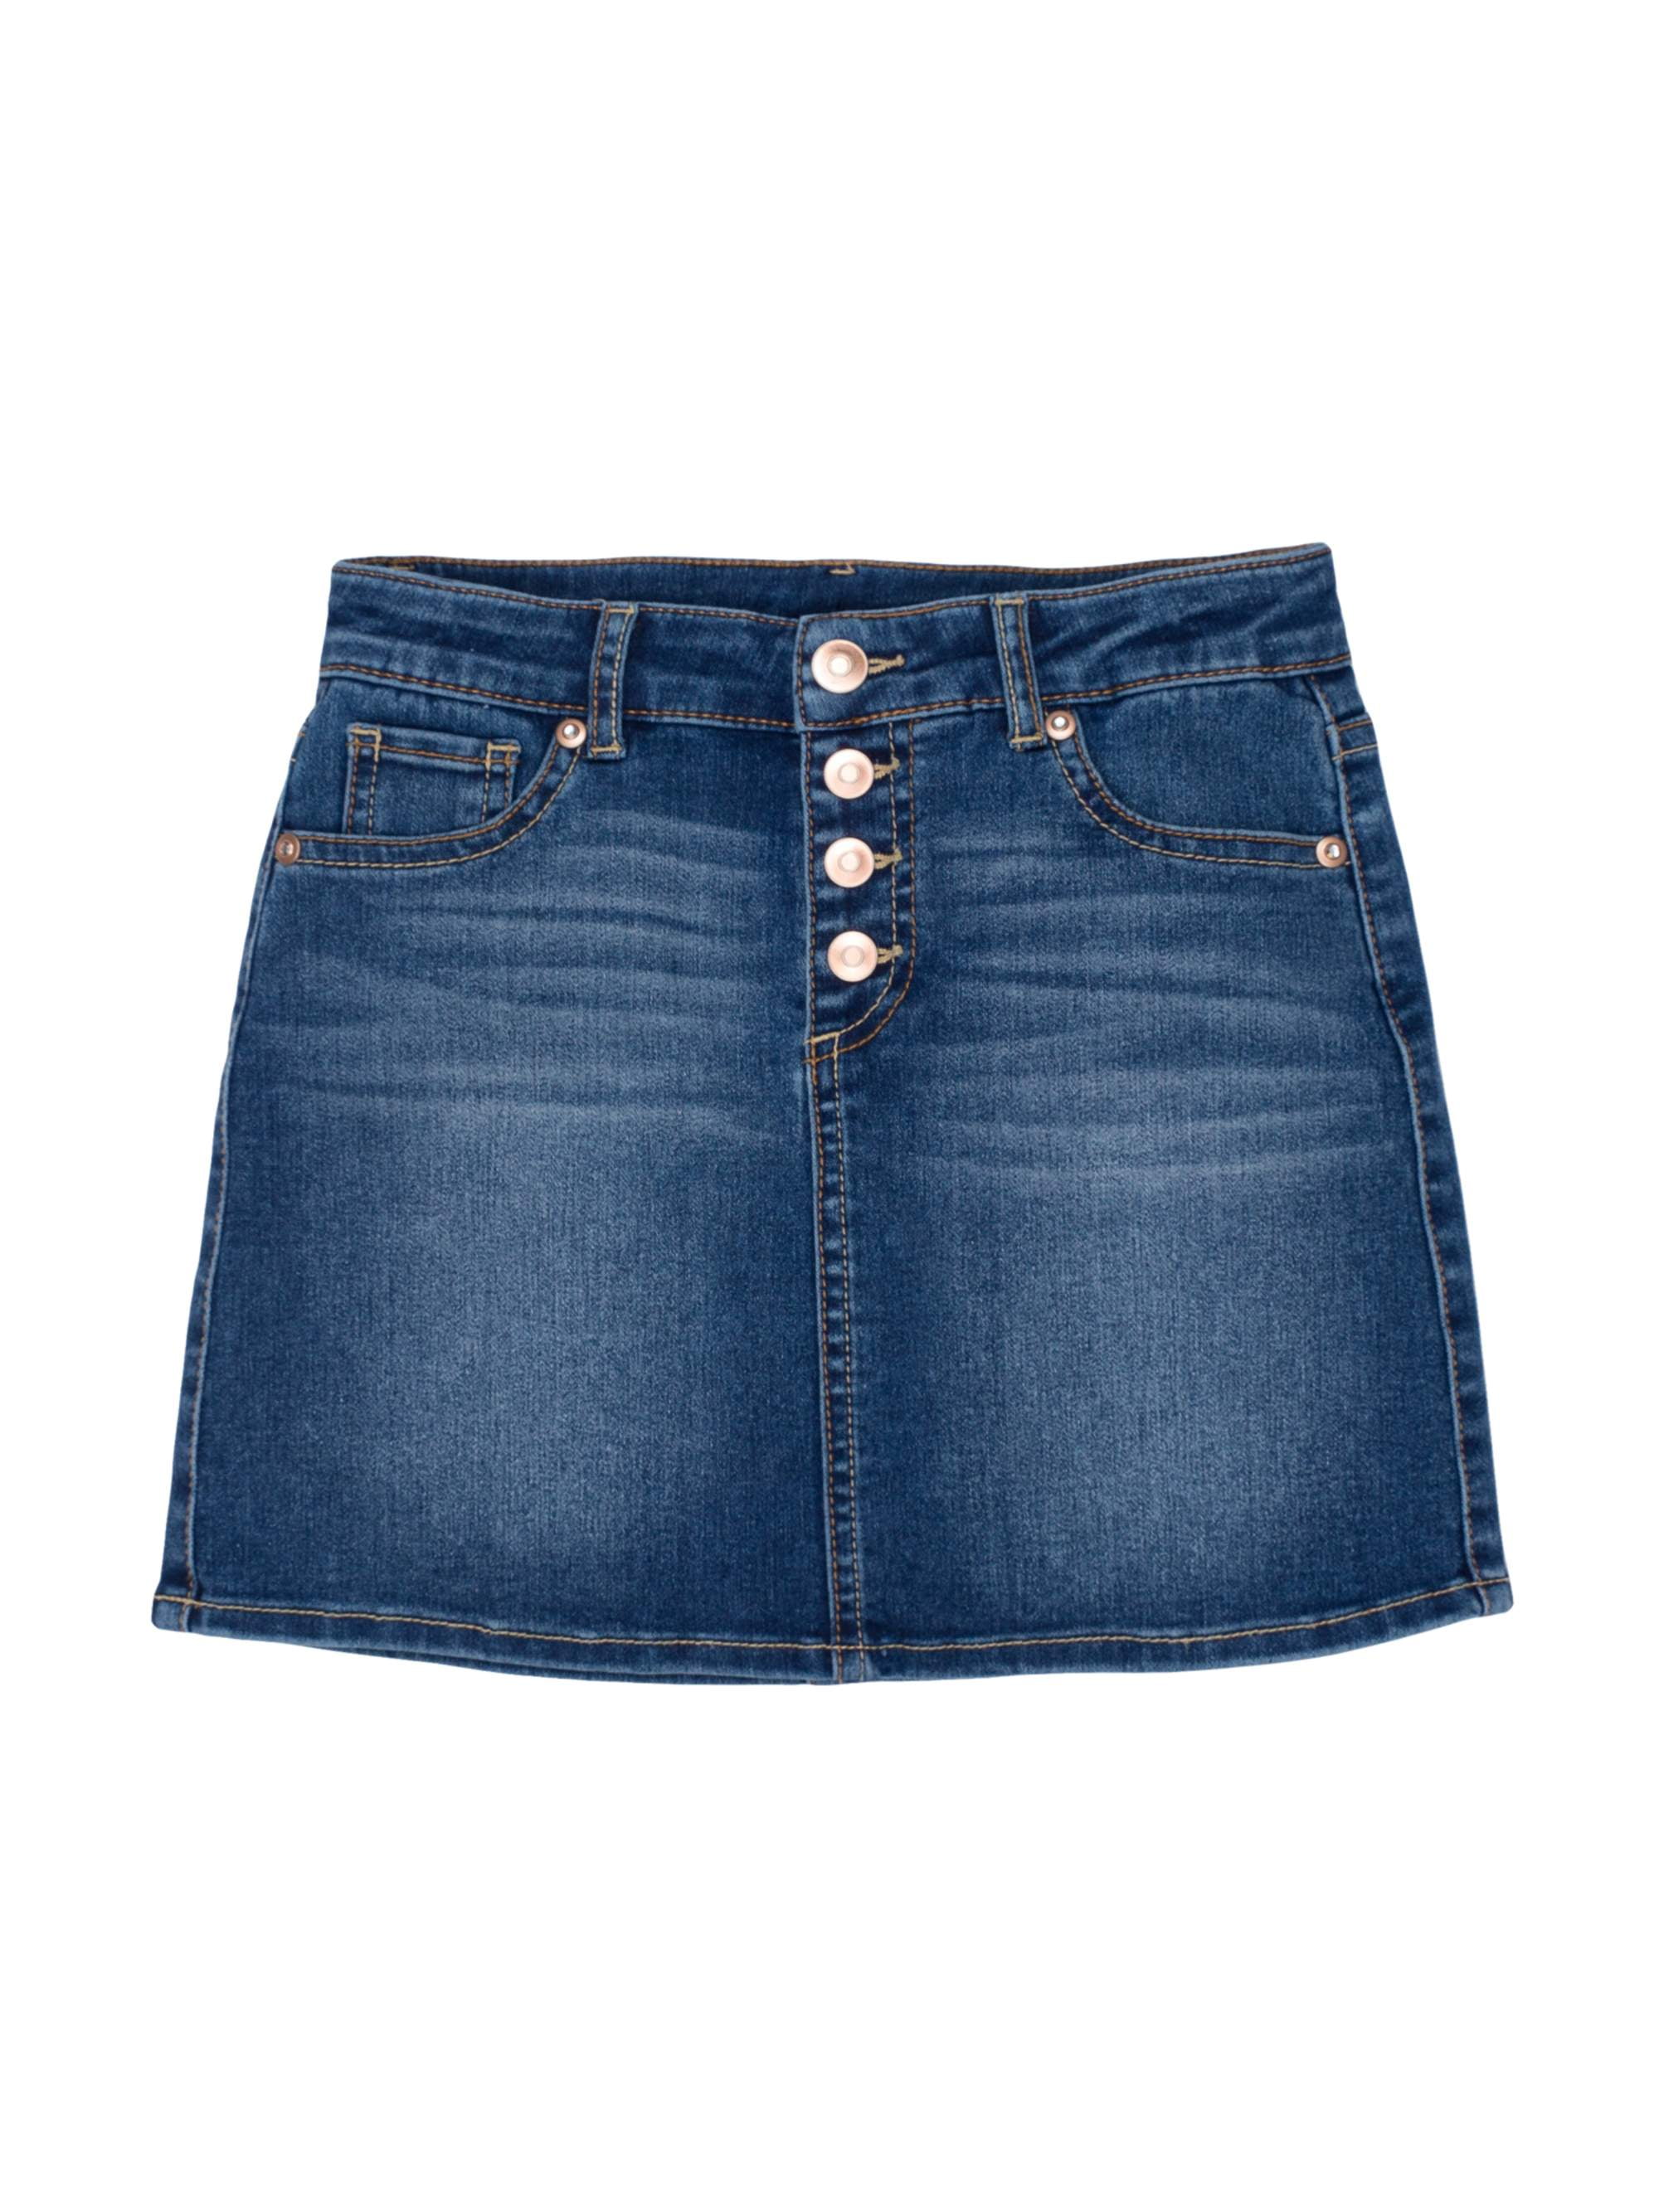 Button Front Denim Skirt (Little Girls 